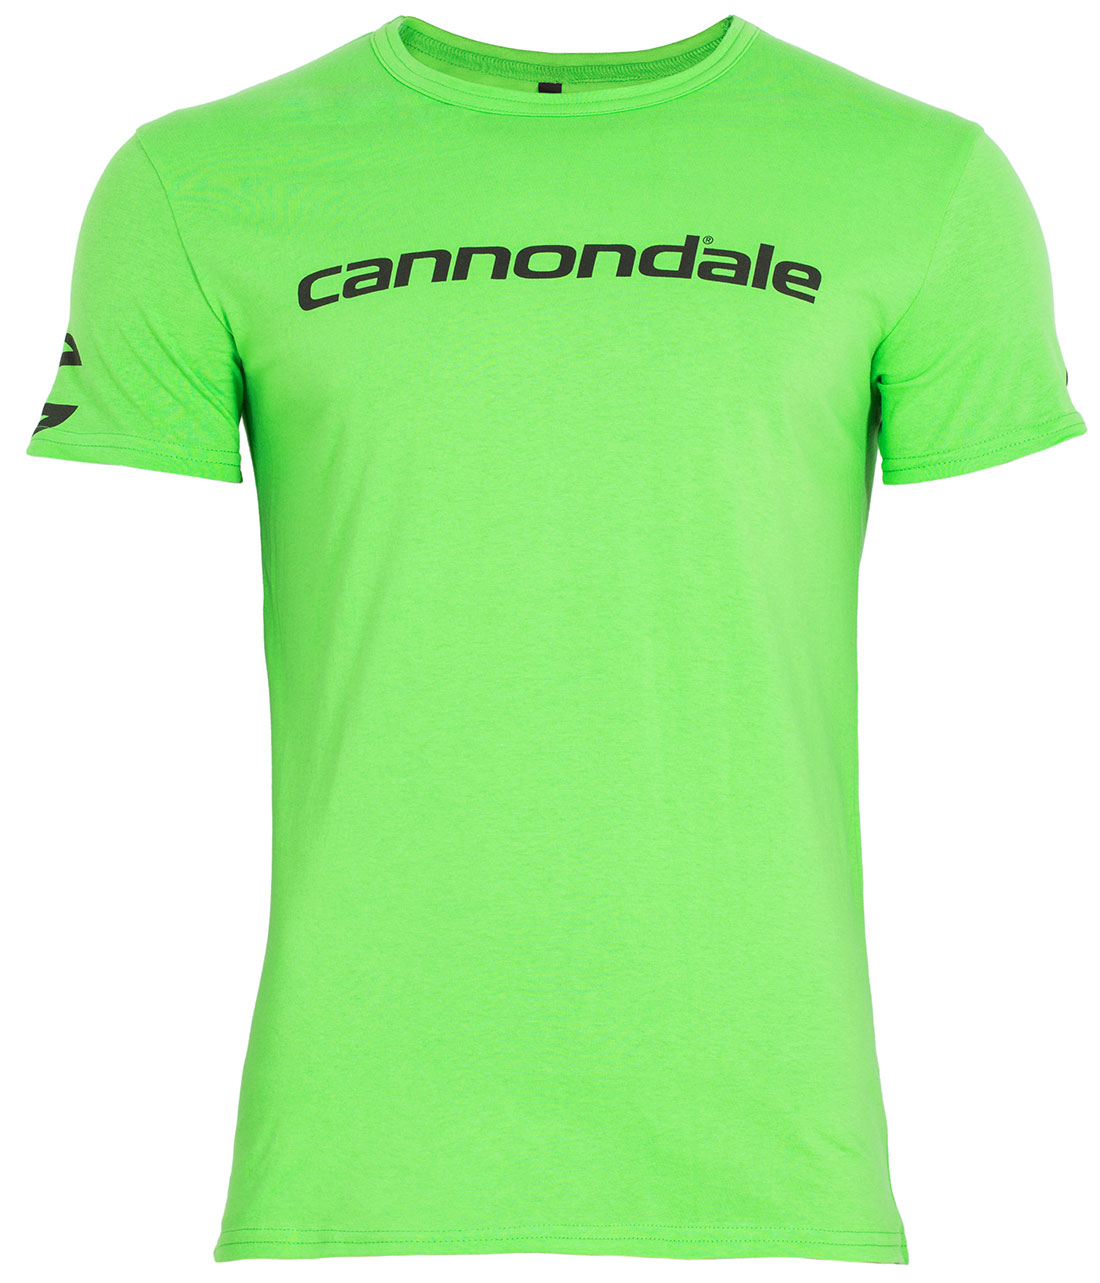 Футболка Cannondale с черным горизонтальным логотипом, зелёная, размер XL